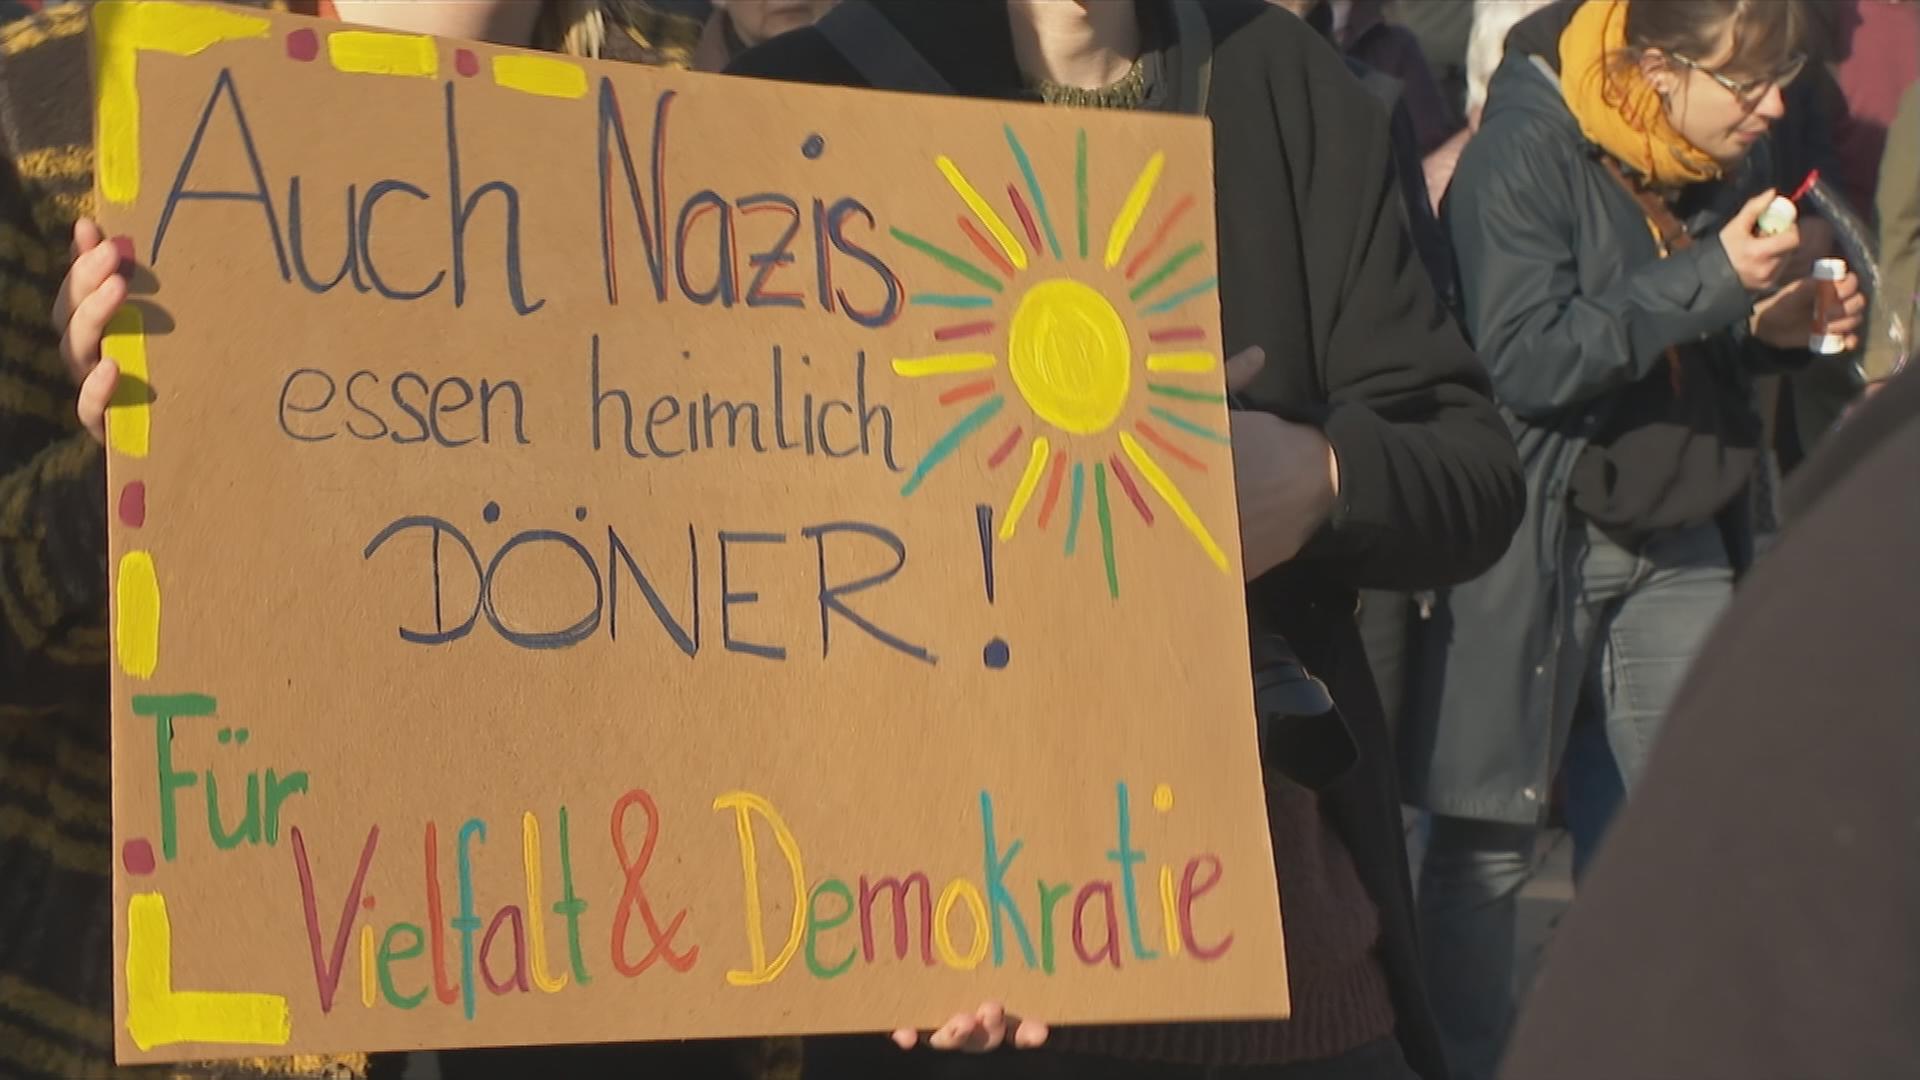 Plakat: Auch Nazis essen heimlich Döner - für Vielfalt und Demokratie